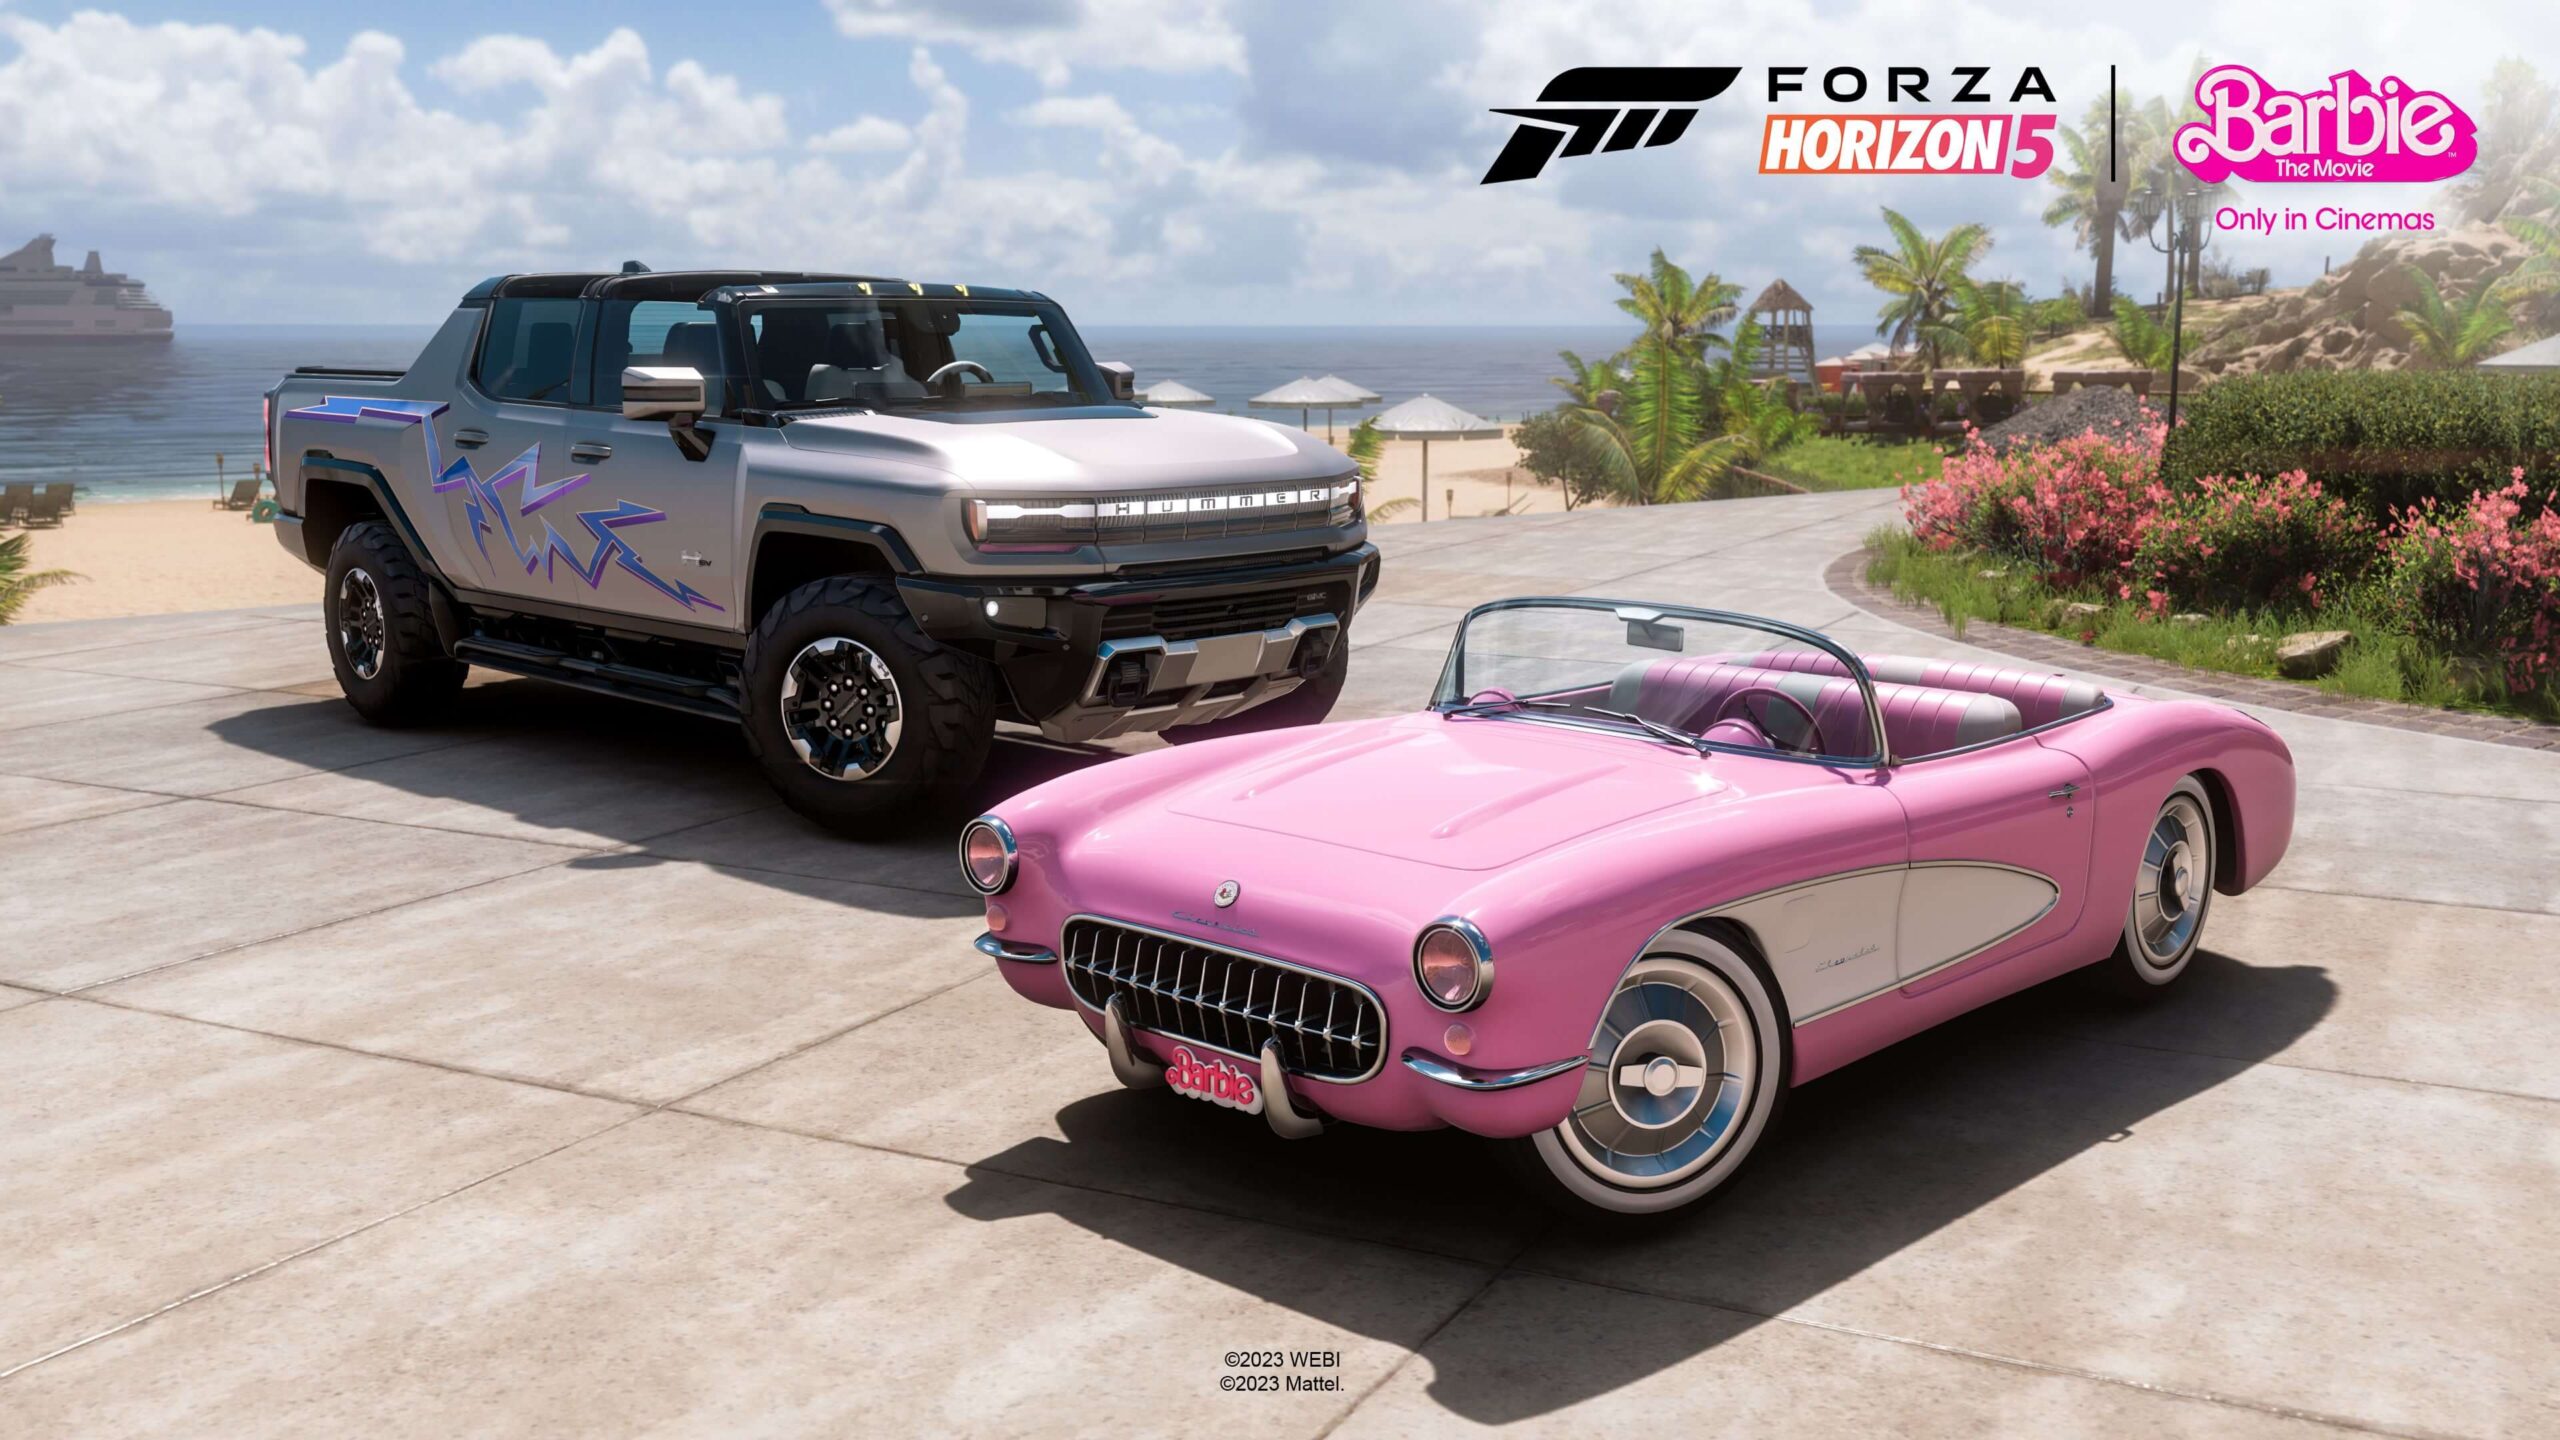 Carros filme Barbie Forza Horizon 5 3